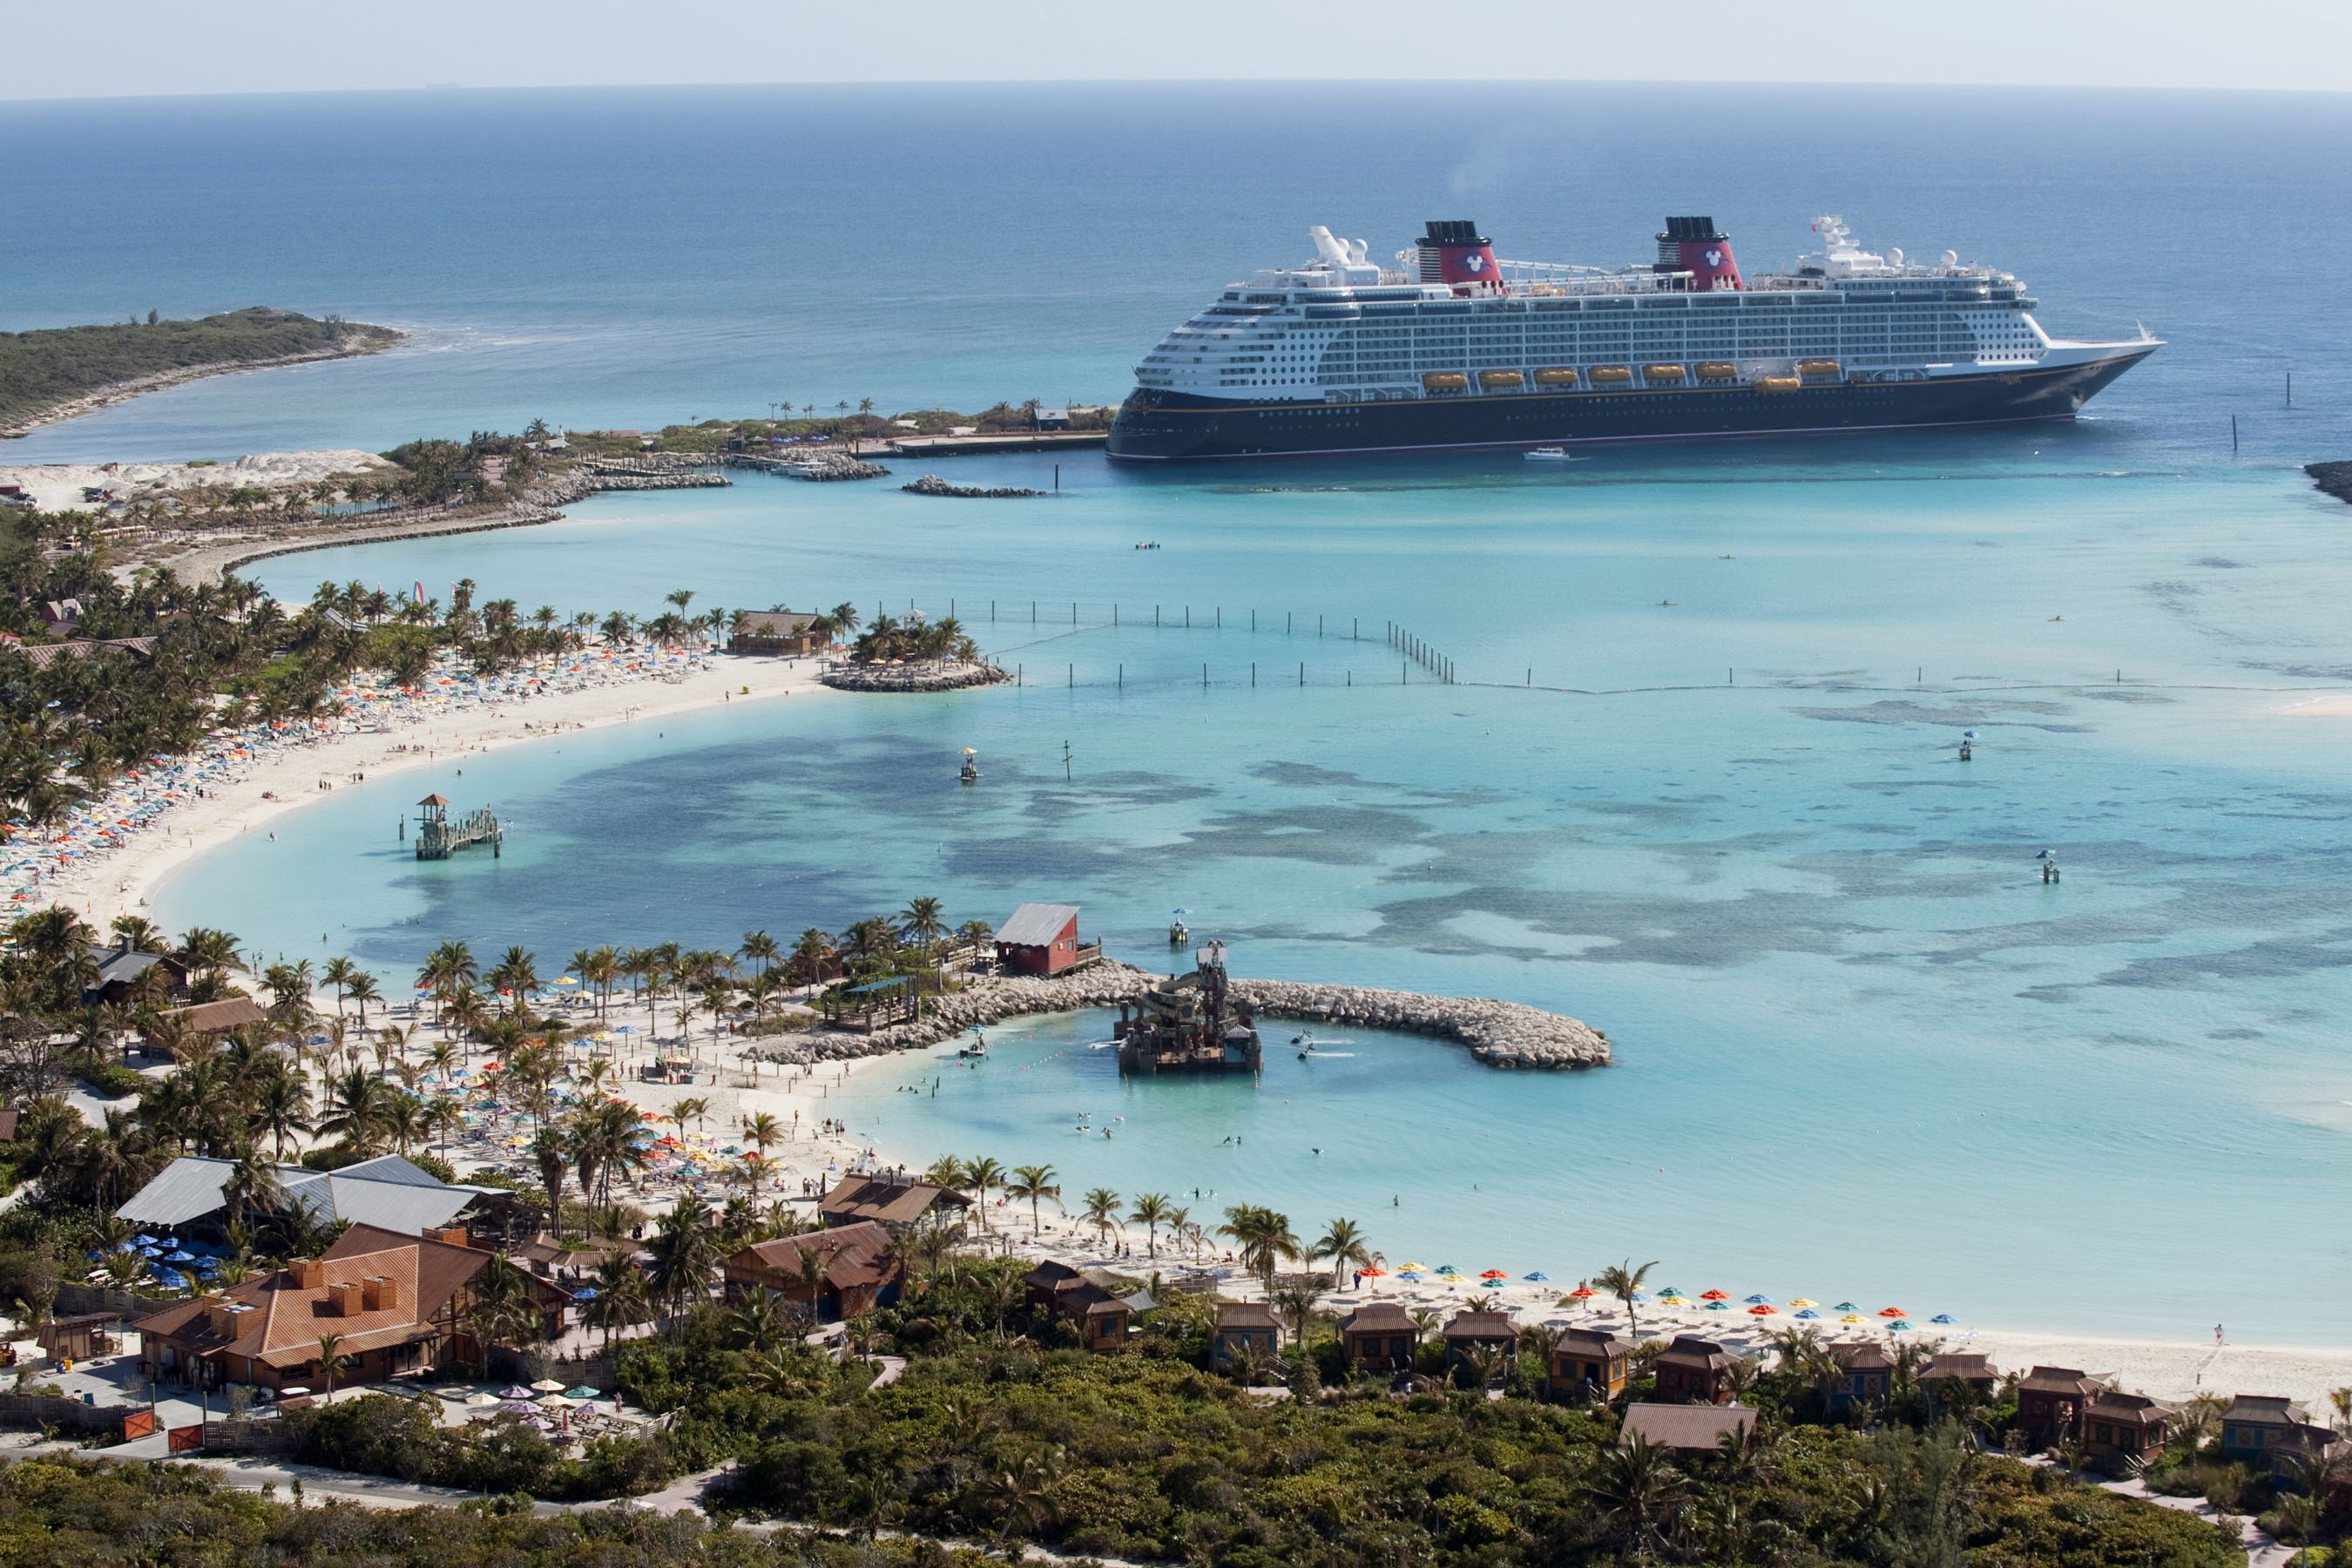 Le Disney Dream accoste à Castaway Cay, l'île privée de Disney dans les eaux tropicales des Bahamas, réservée exclusivement aux clients de Disney Cruise Line.  Dans un décor d'eaux turquoise cristallines, de plages de sable blanc poudreux et de paysages luxuriants, le (Photo : David Roark, photographe)